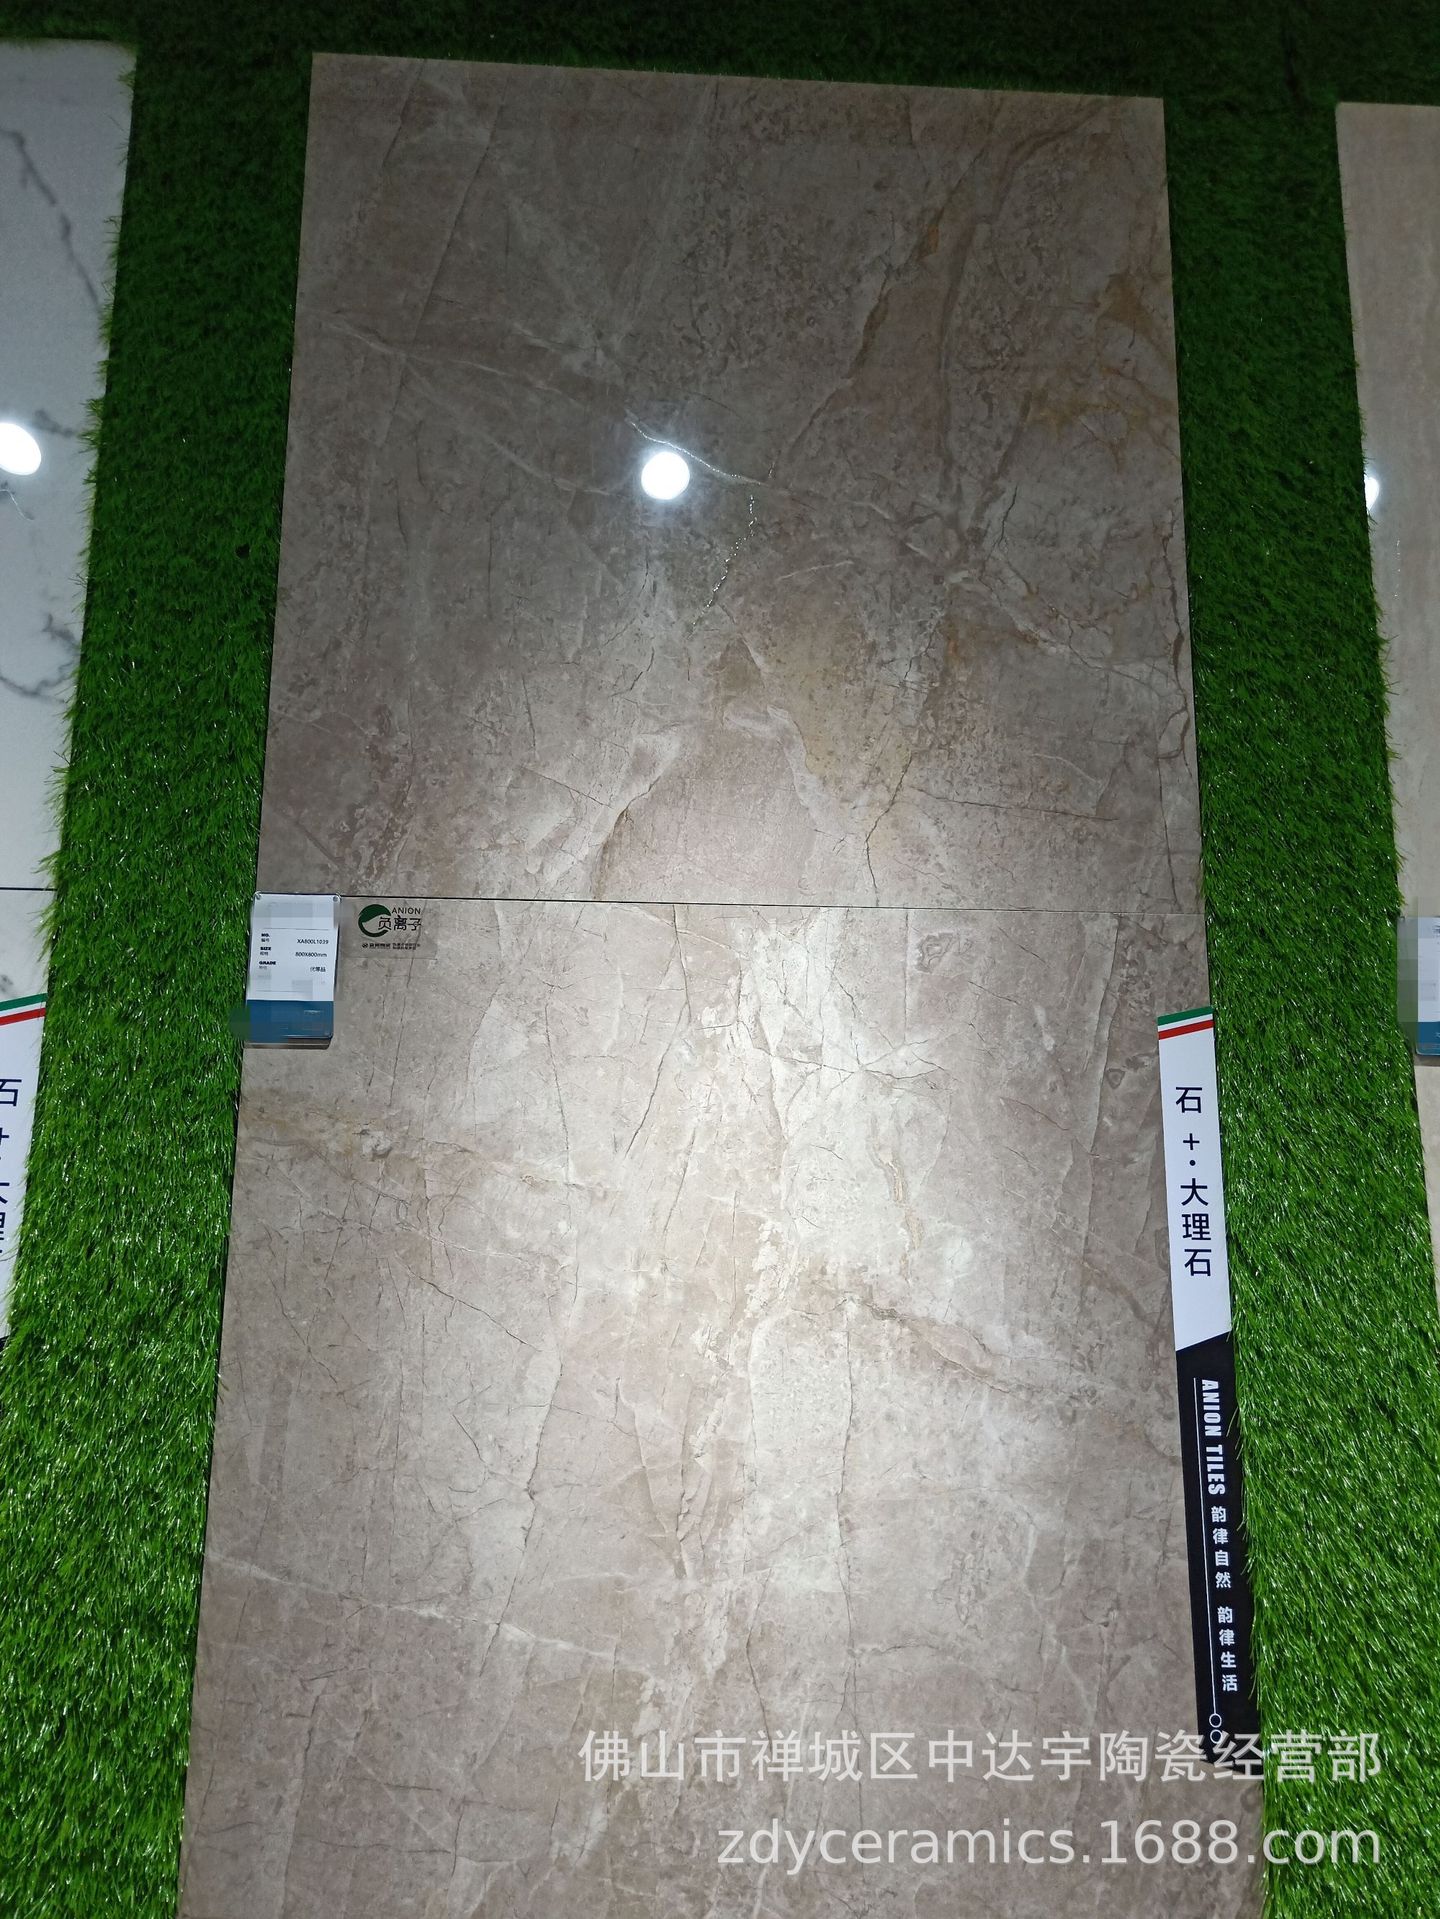 佛山Z客厅地板砖负离子工程大理石瓷砖800X800MM地面砖浴室墙面砖示例图2